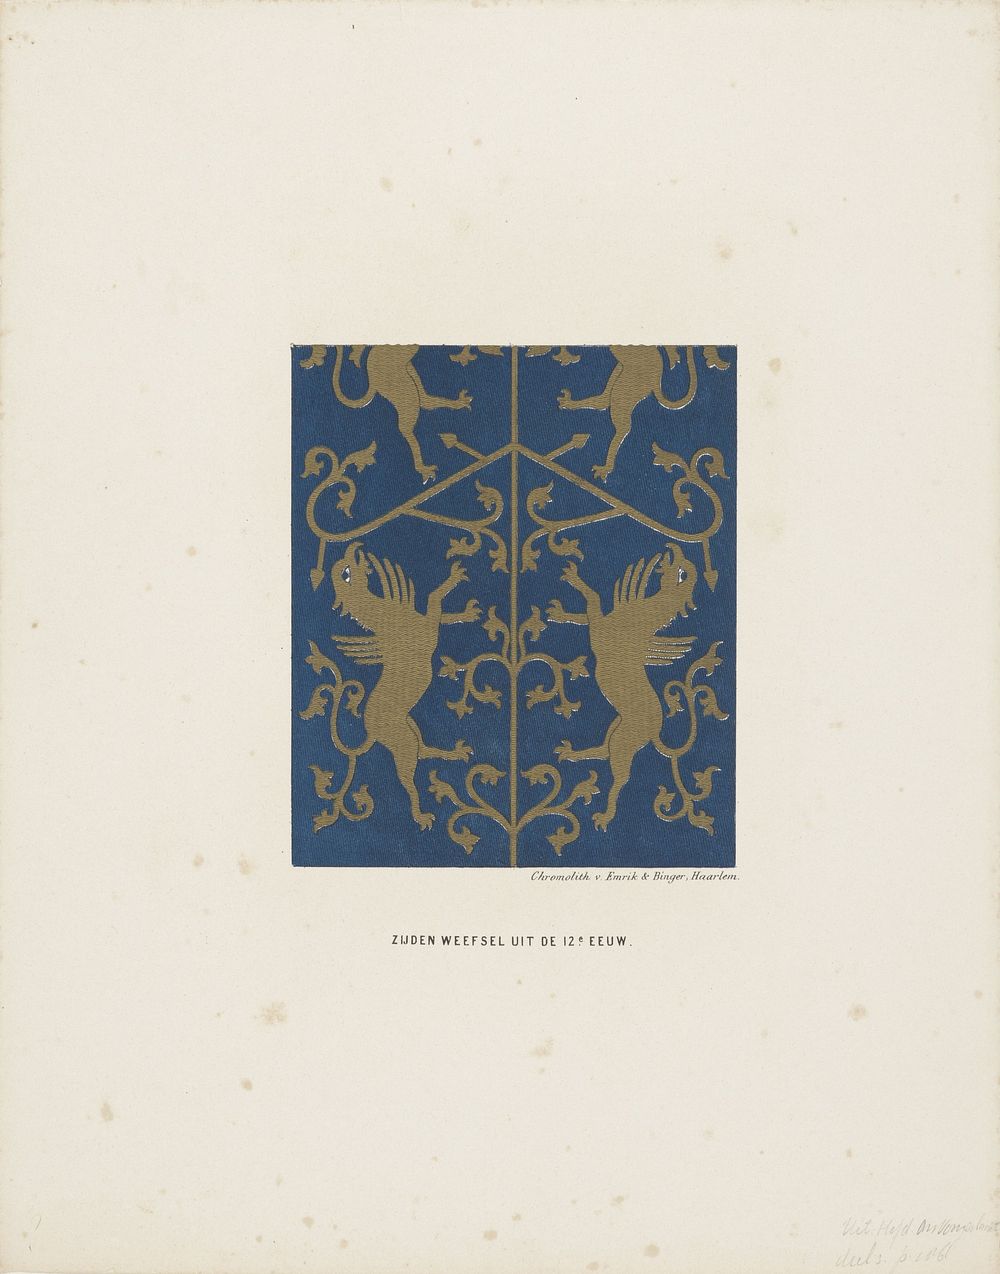 Zijden weefsel, 12e eeuw (1857 - 1864) by anonymous and Emrik and Binger